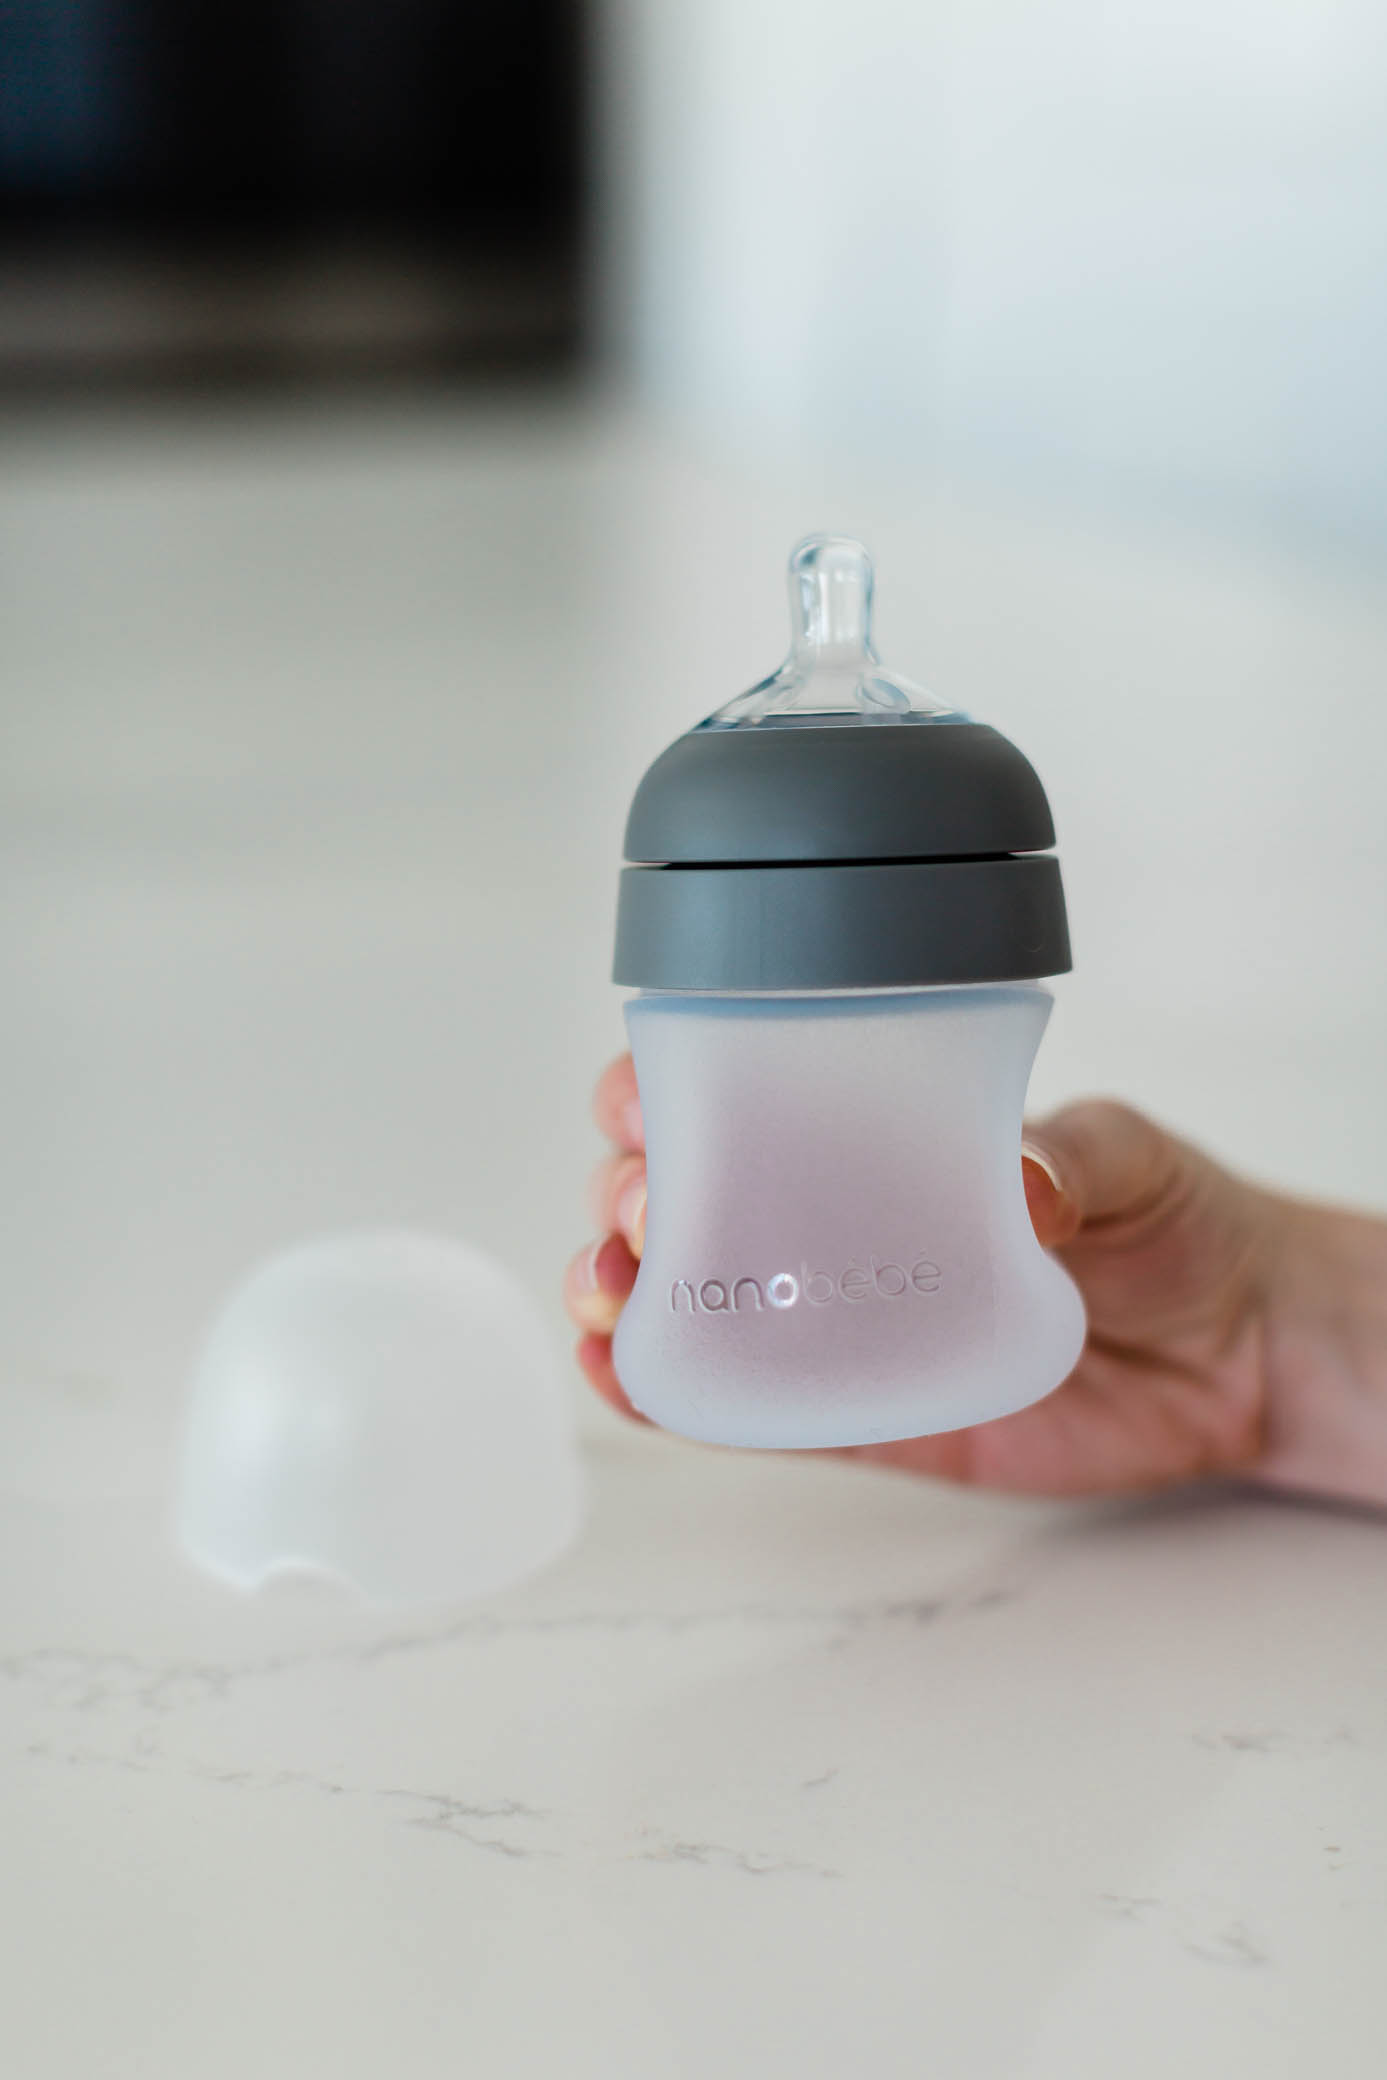 Flexy Baby bottles from nanobebe